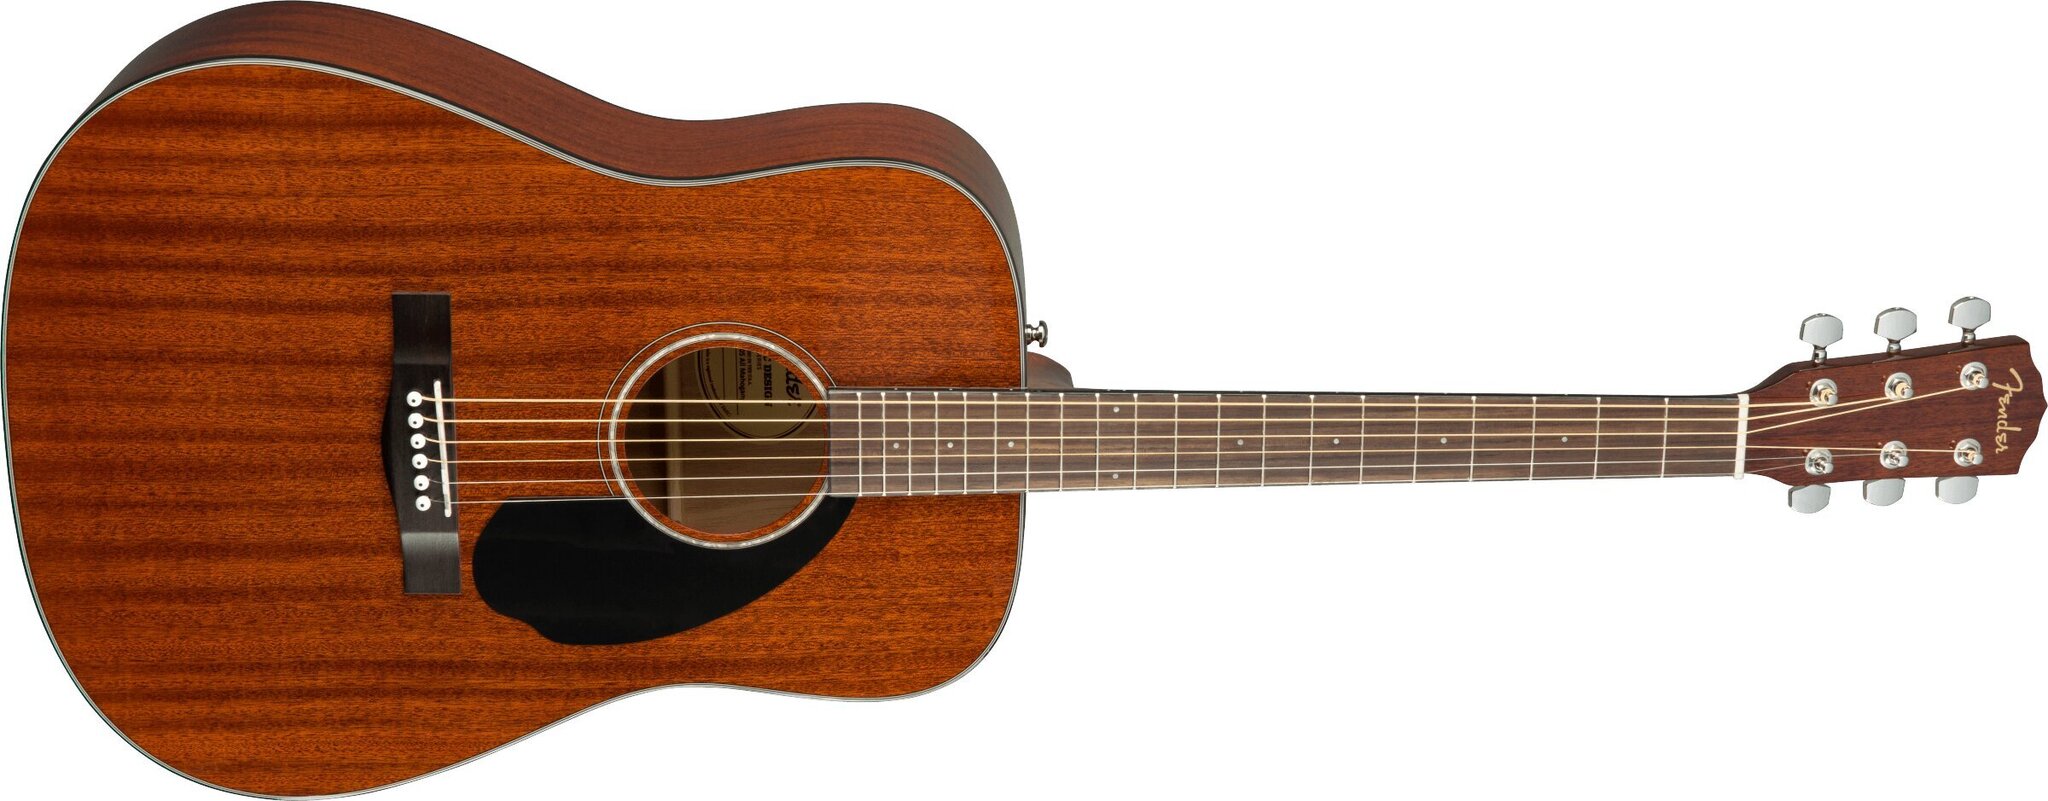 Fender akustiskā ģitāra cena aptuveni 45€ līdz 502€ - KurPirkt.lv